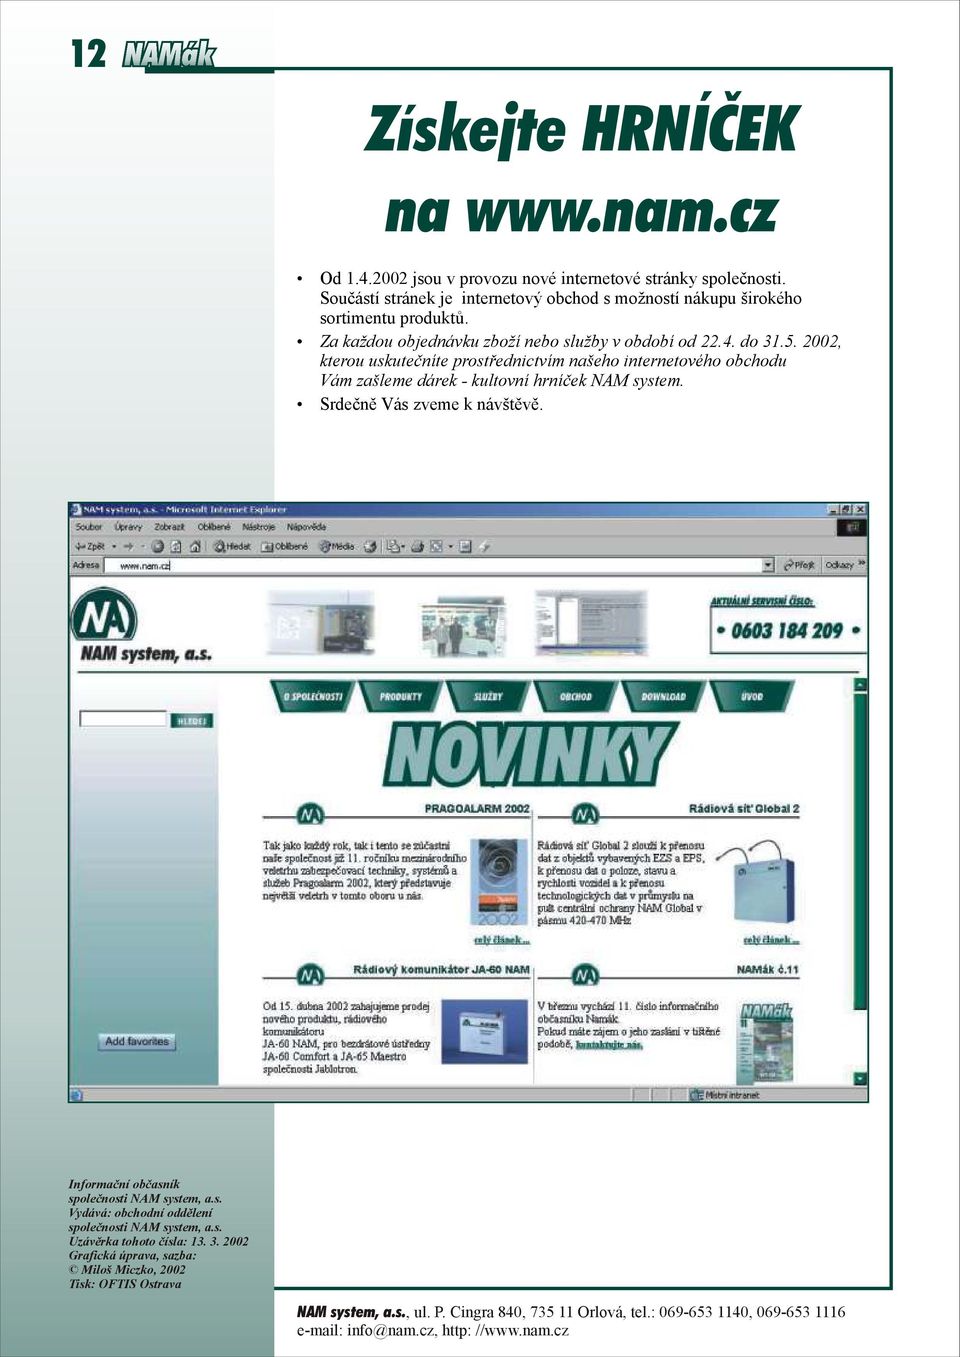 2002, kterou uskutečníte prostřednictvím našeho internetového obchodu Vám zašleme dárek - kultovní hrníček NAM system. Srdečně Vás zveme k návštěvě.